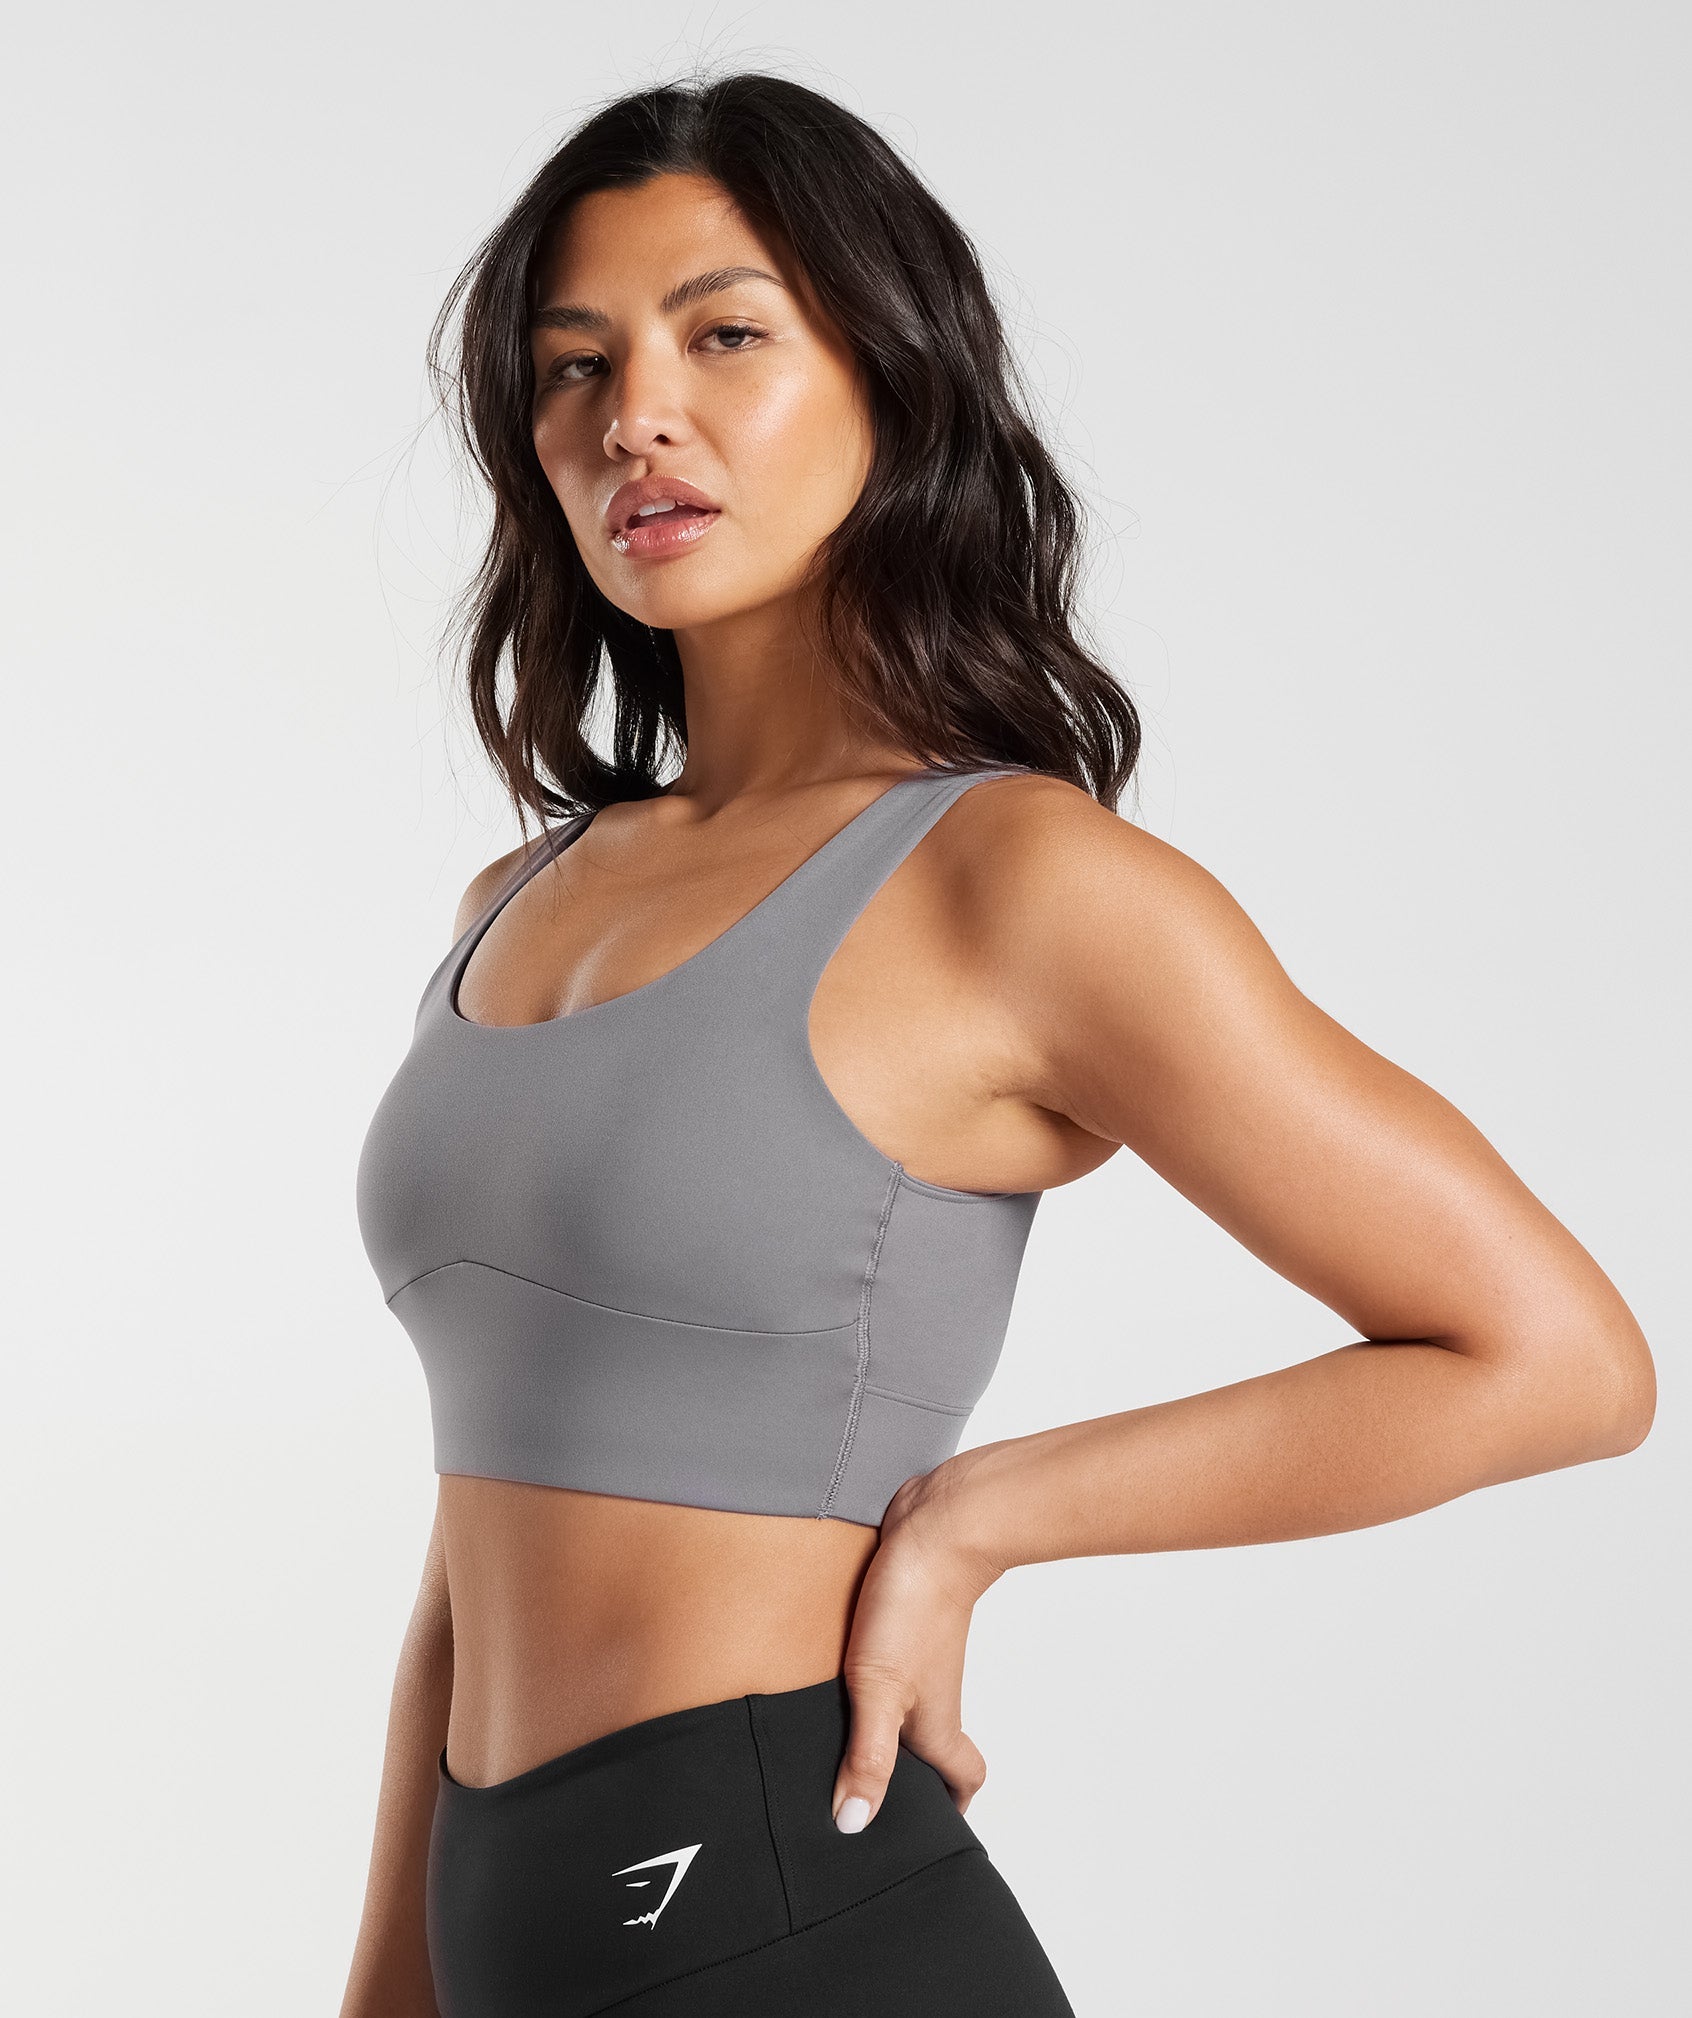 Women's sports bra PRO gray – NOX